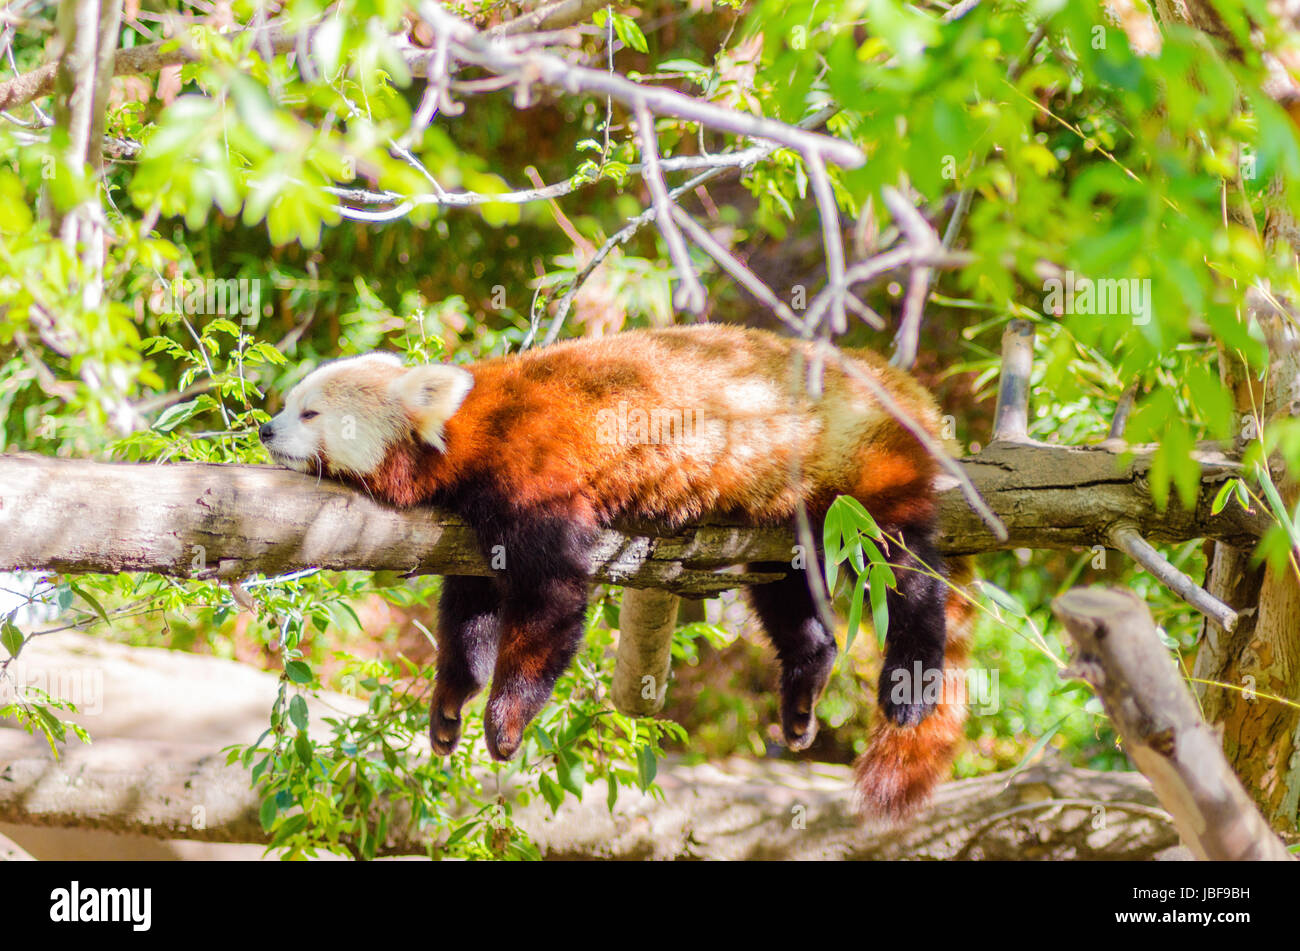 Ein schöner roter Panda liegend auf einem Ast schlafen Strethced mit seinen Beinen hängend nach unten baumeln. Der rote Katze Bär hat eine weiße Maske und rot braunen Mantel und heißt Hun ho in der chinesischen Bedeutung Fuchs Feuer. Stockfoto